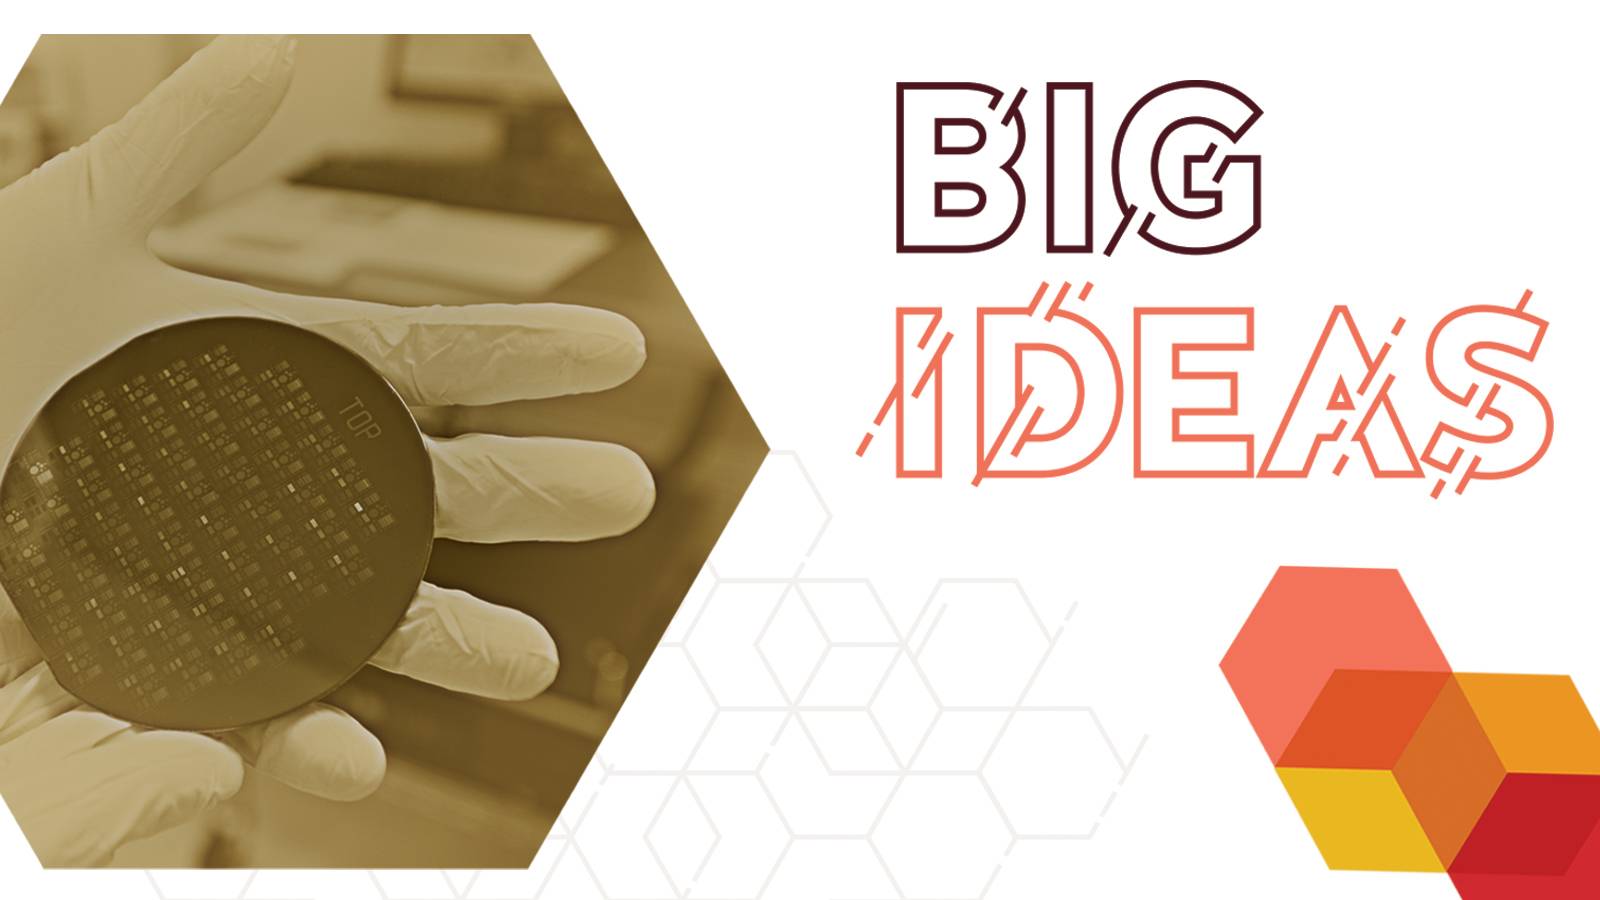 Big Ideas Virtual Week Logo